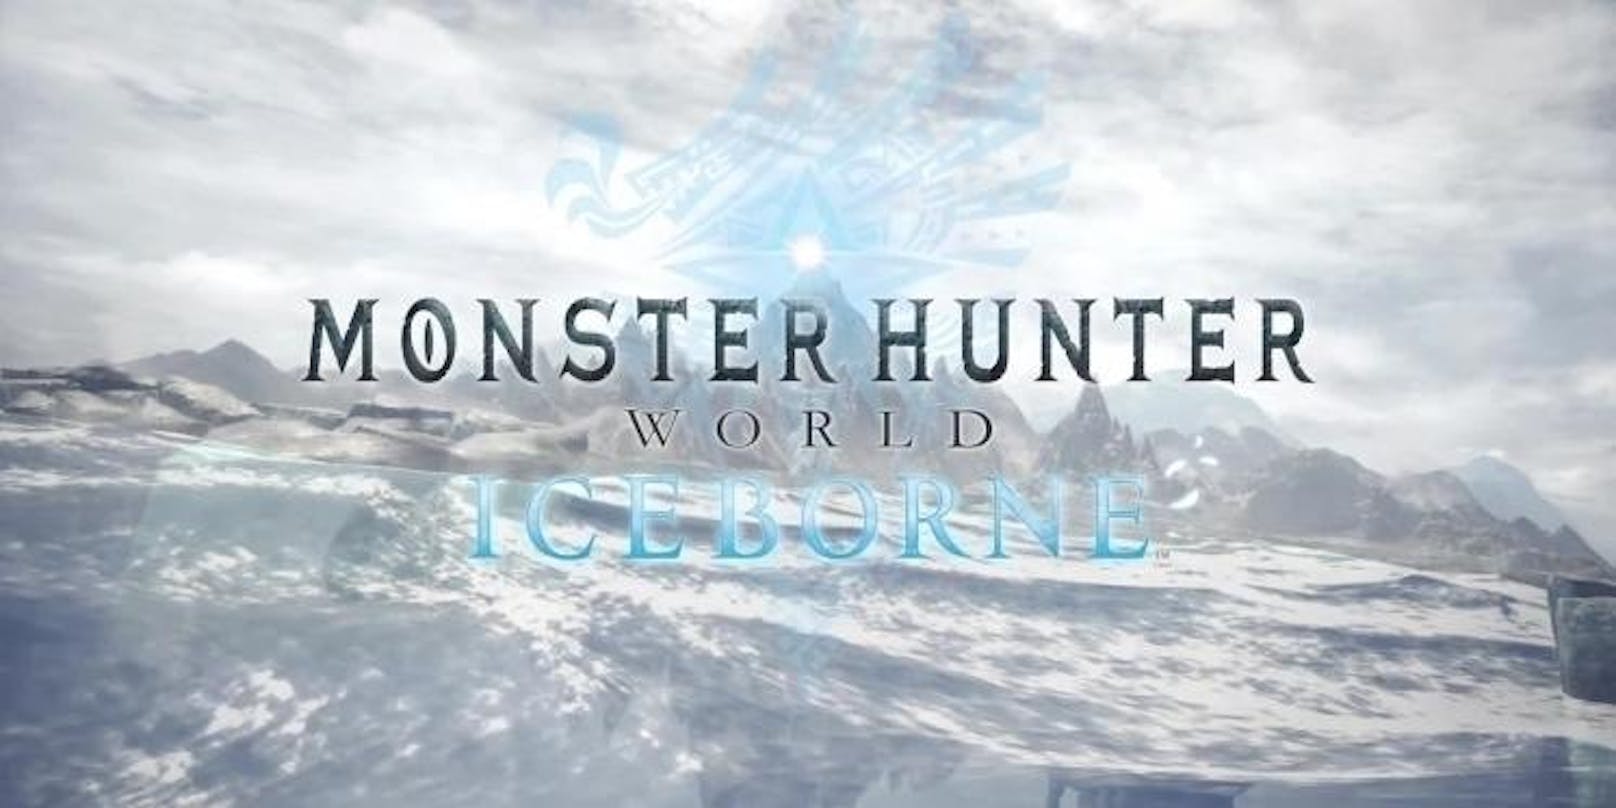 <b>10. Mai 2019: </b>In einem exklusiven Frühlings-Update per Livestream hat Capcom heute Nacht neue Informationen zu Monster Hunter World: Iceborne, der sehnlich erwarteten, gigantischen Erweiterung zu Monster Hunter: World, angekündigt. Die massive Erweiterung Iceborne verdoppelt nun den Spielinhalt der Erstveröffentlichung, wenn sie am 6. September für PlayStation 4 und Xbox One erscheint. Eine Veröffentlichung für den PC ist für den kommenden Winter geplant. Neben dem Erscheinungstermin wurden im Livestream zahlreiche neue Details enthüllt, darunter der eisige Schauplatz, neue Monster, Spiel-Optionen und die Vorbestell- und Kauf-Angebote. <a href="https://www.youtube.com/watch?v=l5qH_TlRodE&feature=youtu.be">Stream ansehen!</a>